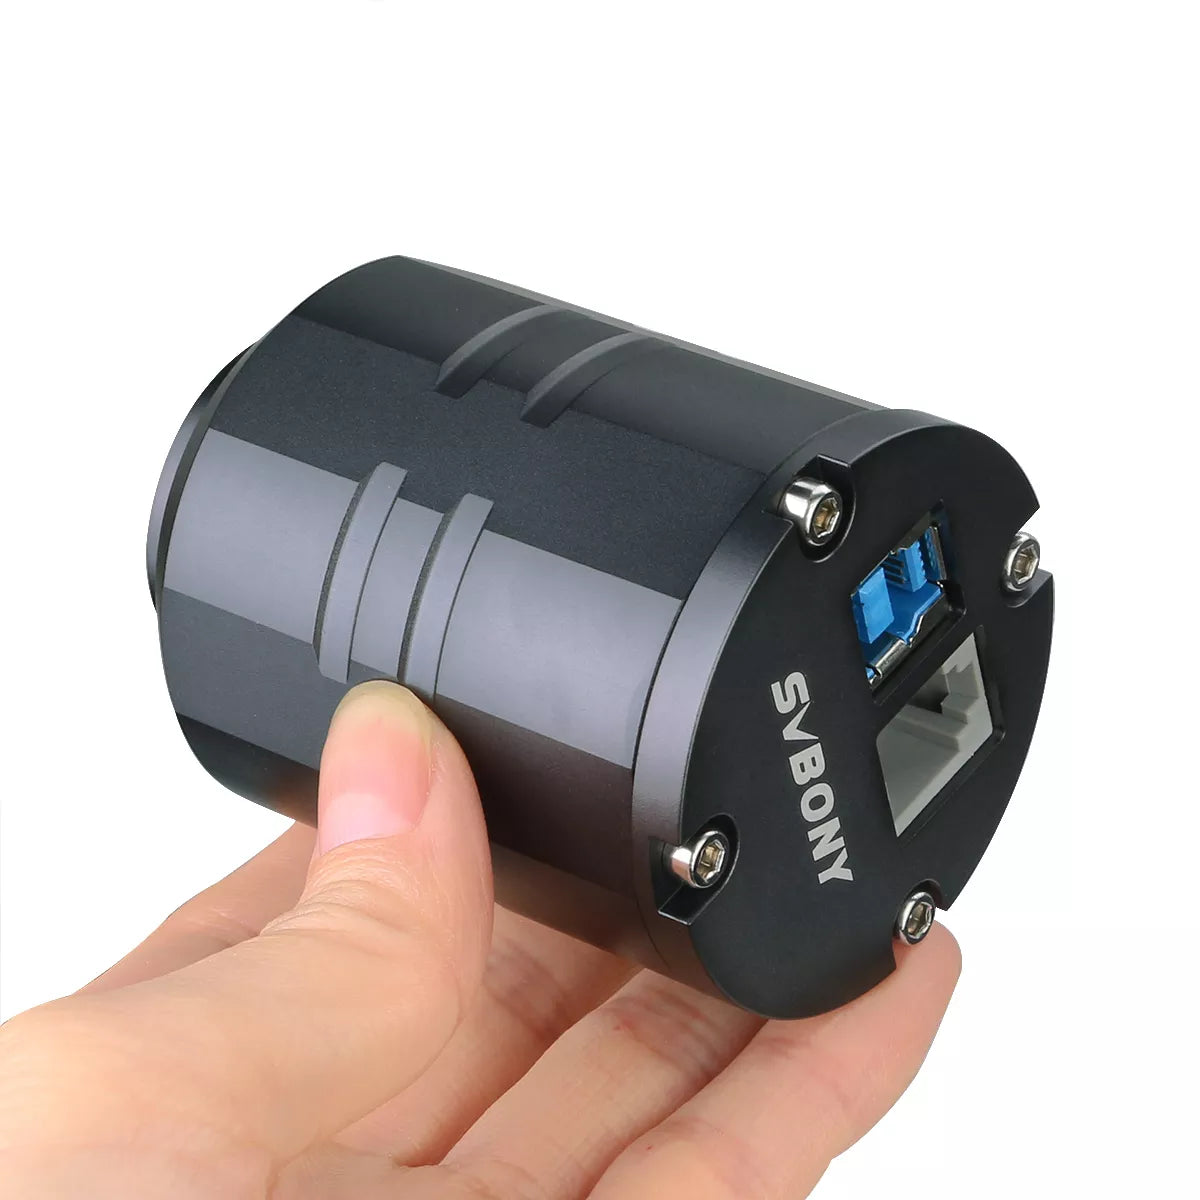 Svbony SV305 Pro Guide Camera